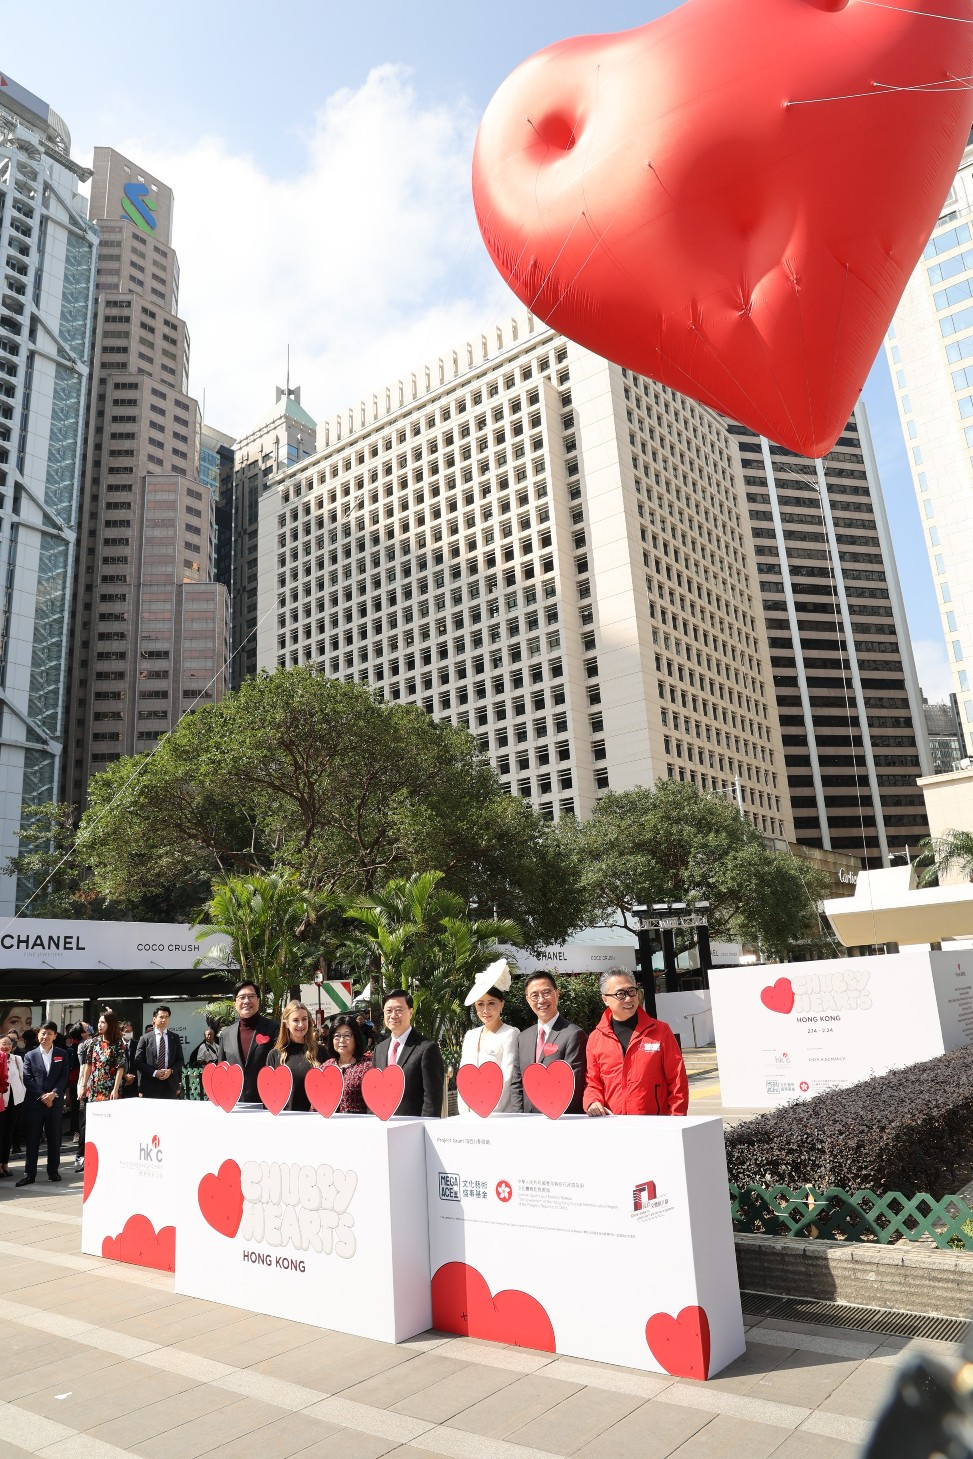 刘嘉玲今日（14日）到中环出席一个巨型红心设计装置揭幕活动。